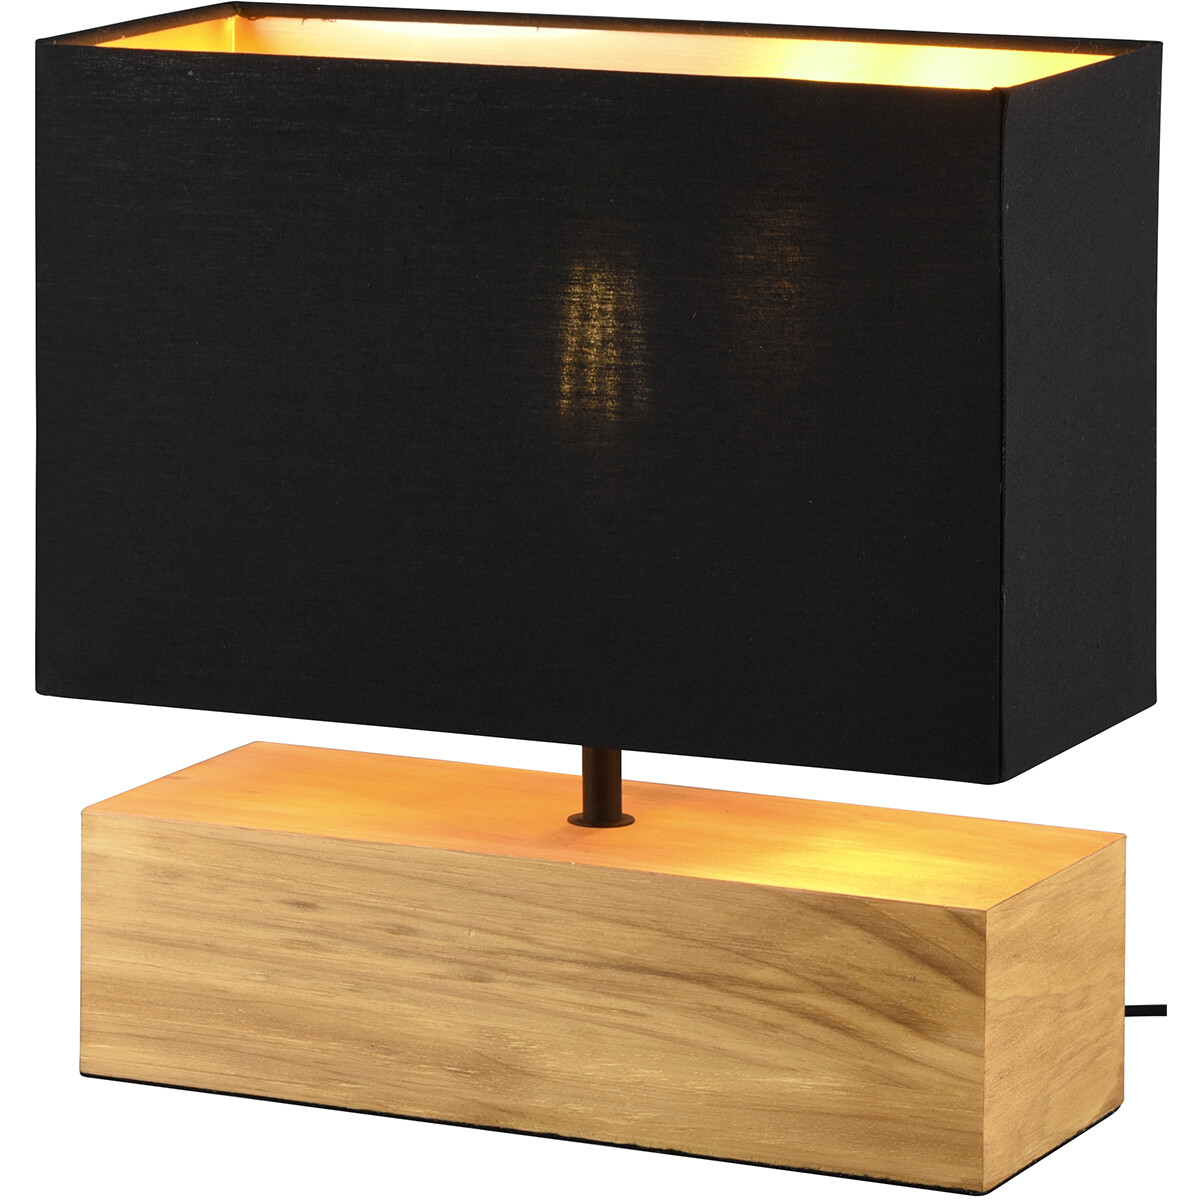 LED Tafellamp - Tafelverlichting - Trion Wooden - E27 Fitting - Rechthoek - Mat Zwart/Goud - Hout